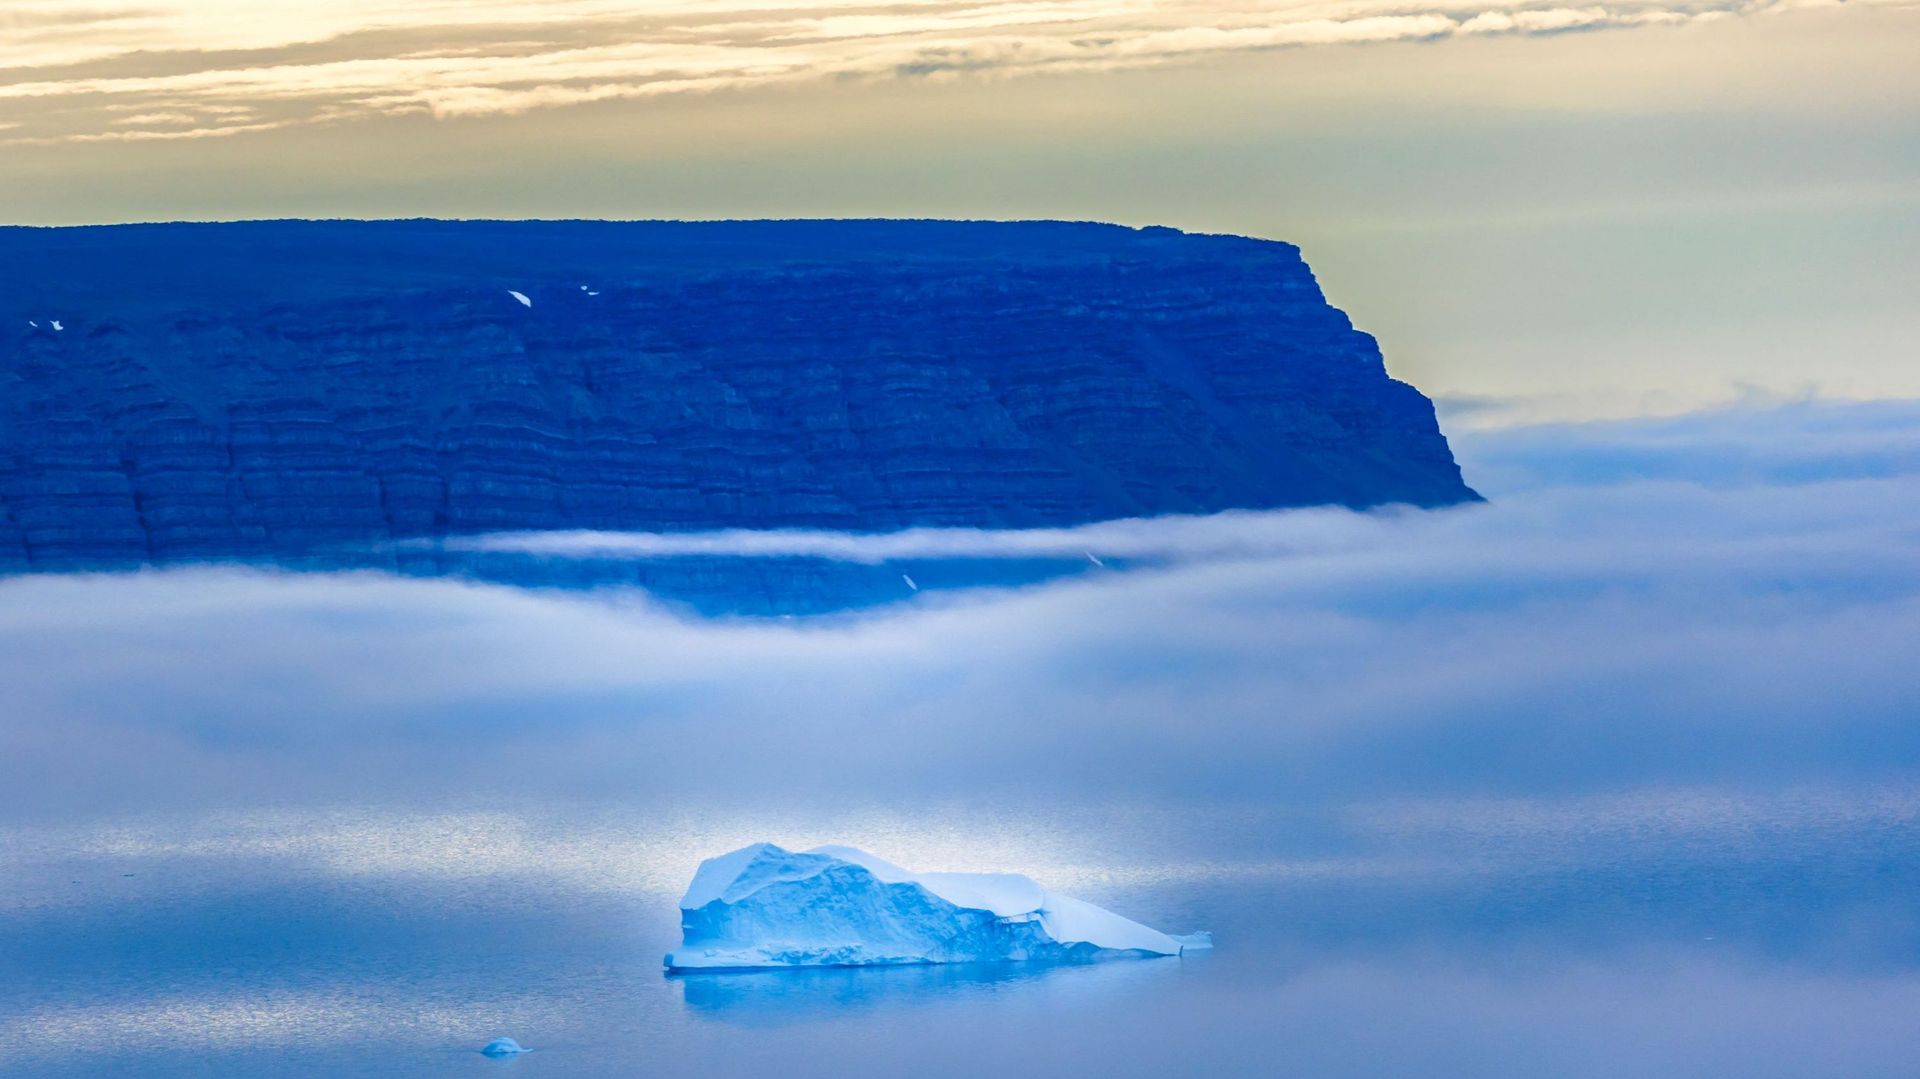 Des icebergs vus à travers le brouillard flottent dans la baie de Baffin près de Pituffik, au Groenland, le 20 juillet 2022, capturés par un avion Gulfstream V de la NASA lors d'une mission aérienne visant à mesurer la fonte de la glace de mer arctique.